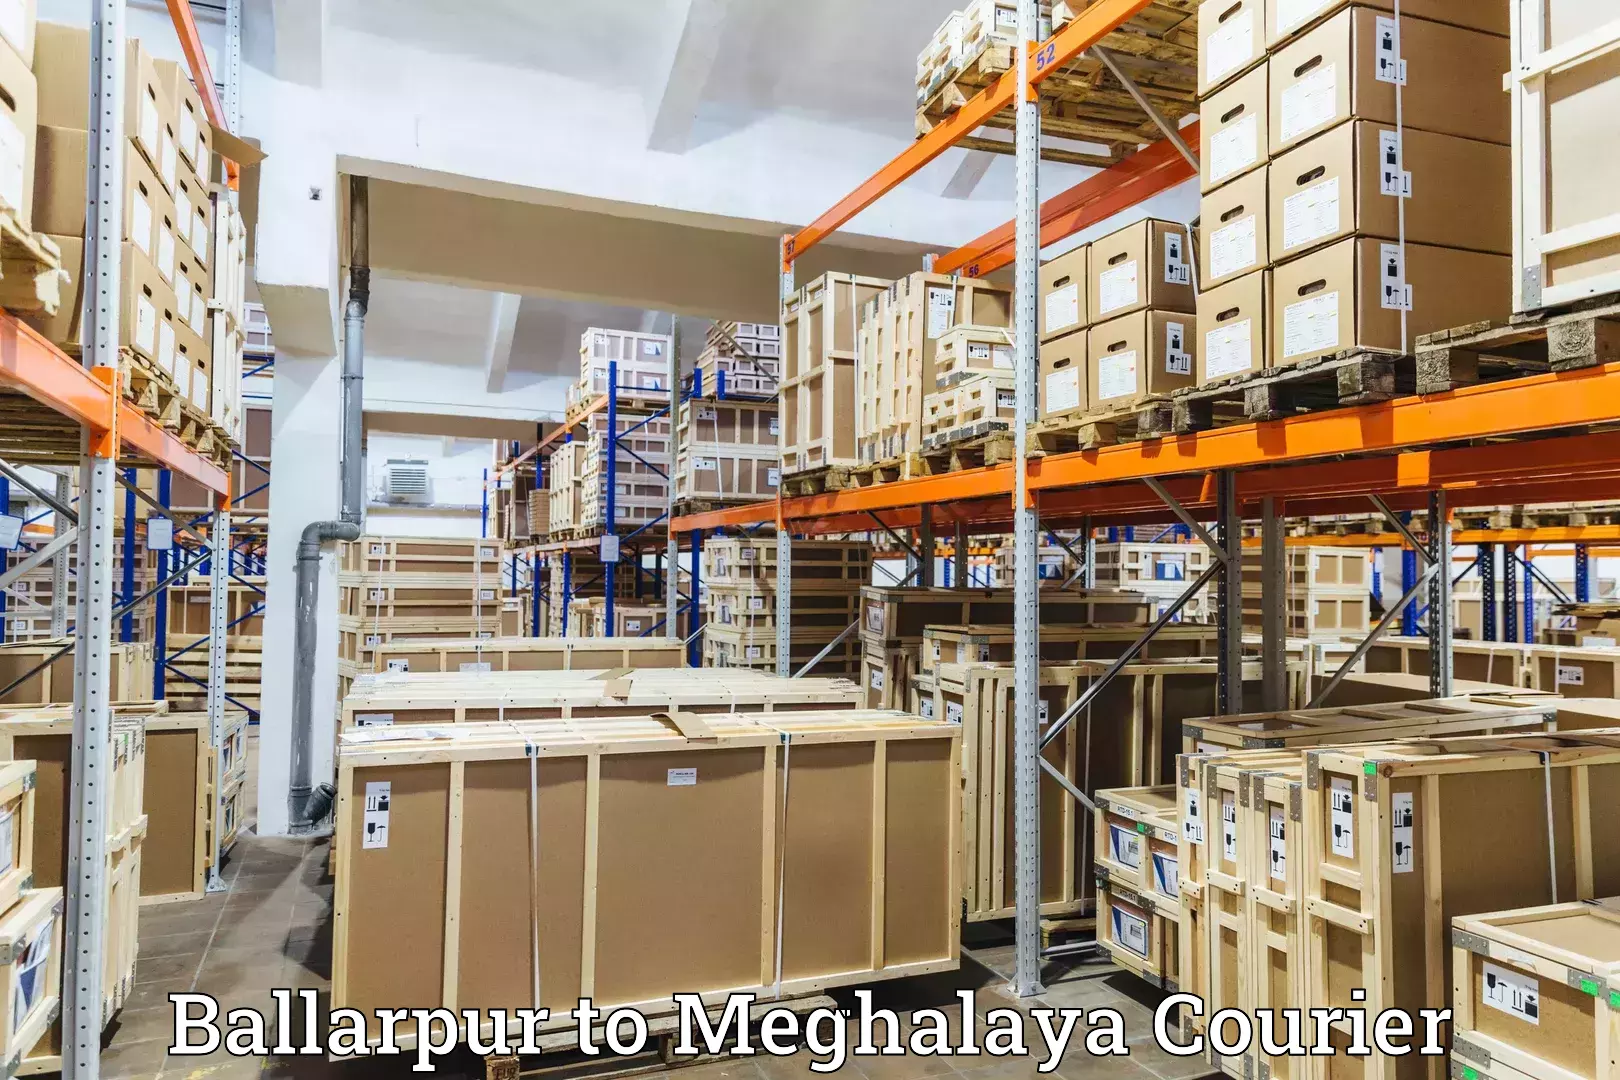 Residential courier service Ballarpur to Shillong